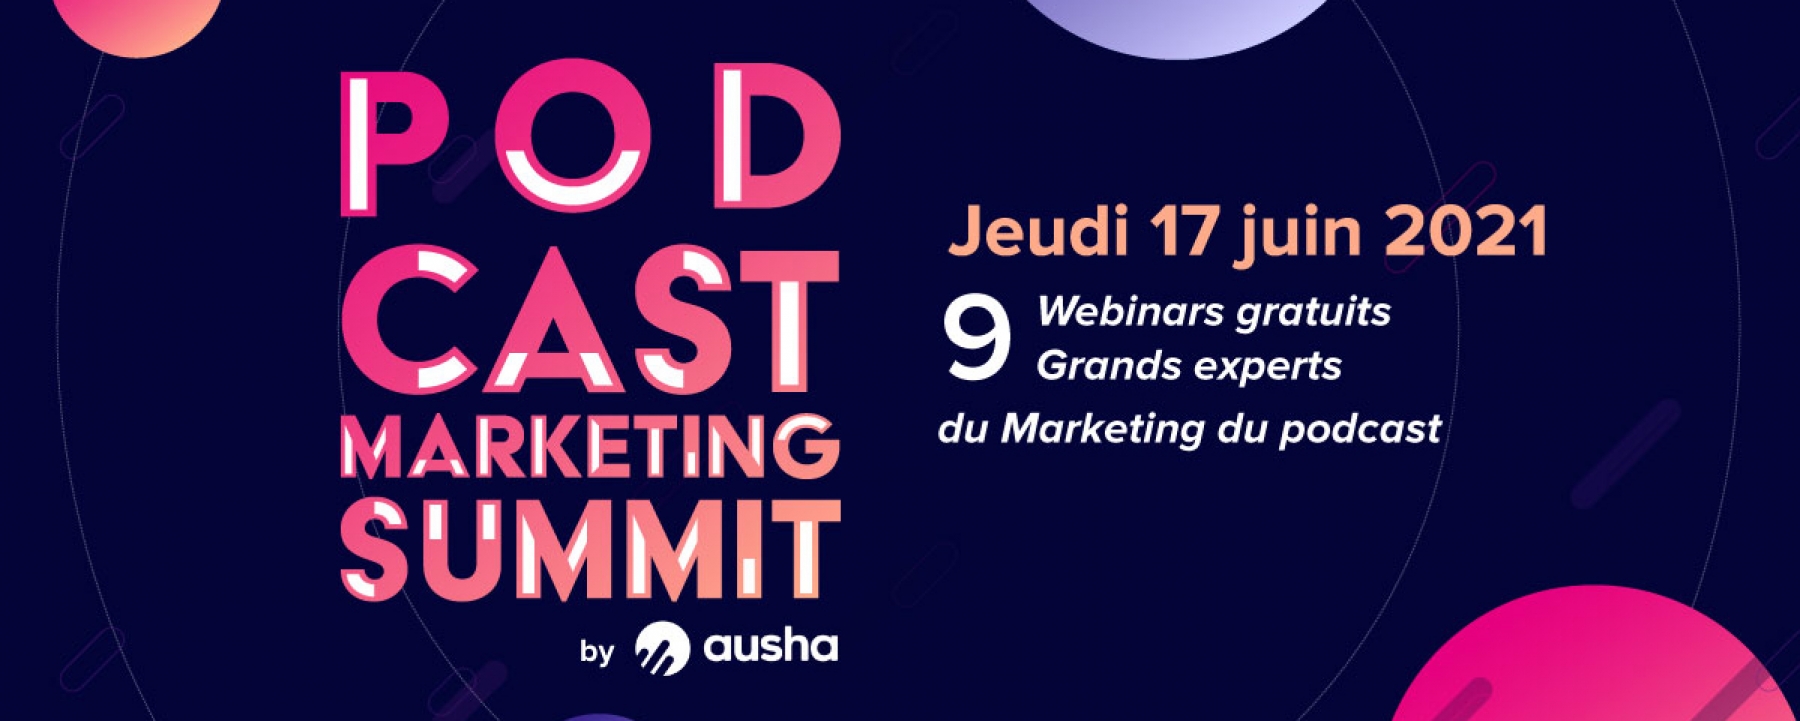 Podcast Marketing Summit, le 17 juin 2021 par Ausha